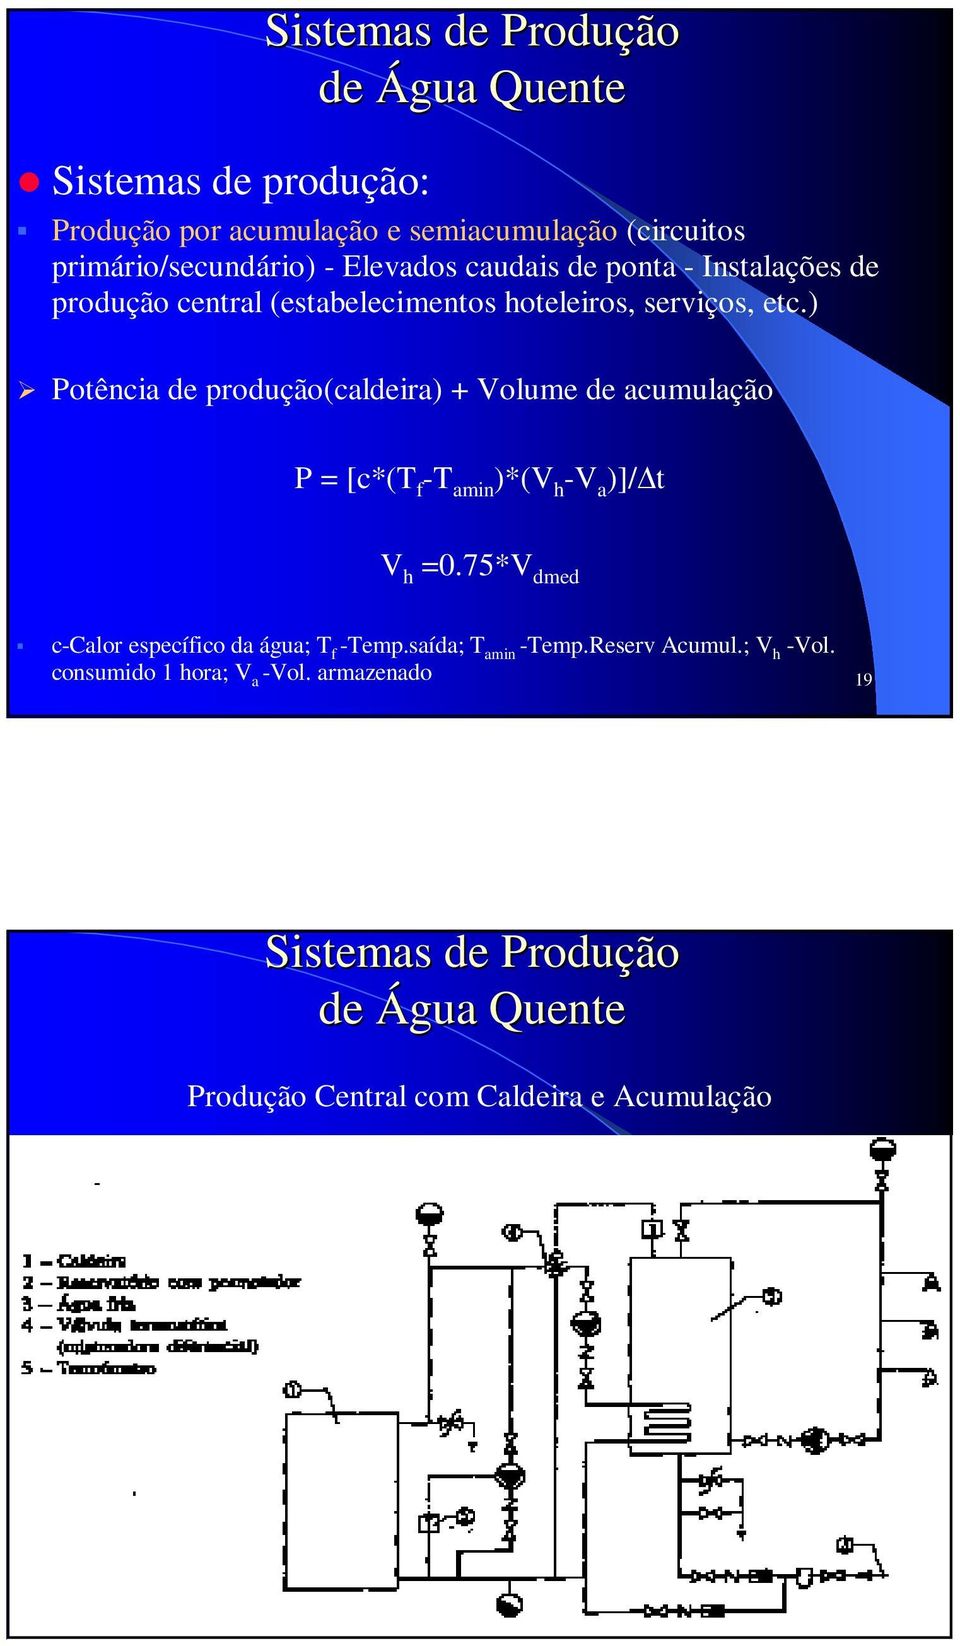 ) Potência de produção(caldeira) + Volume de acumulação P = [c*(t f -T amin )*(V h -V a )]/ t V h =0.